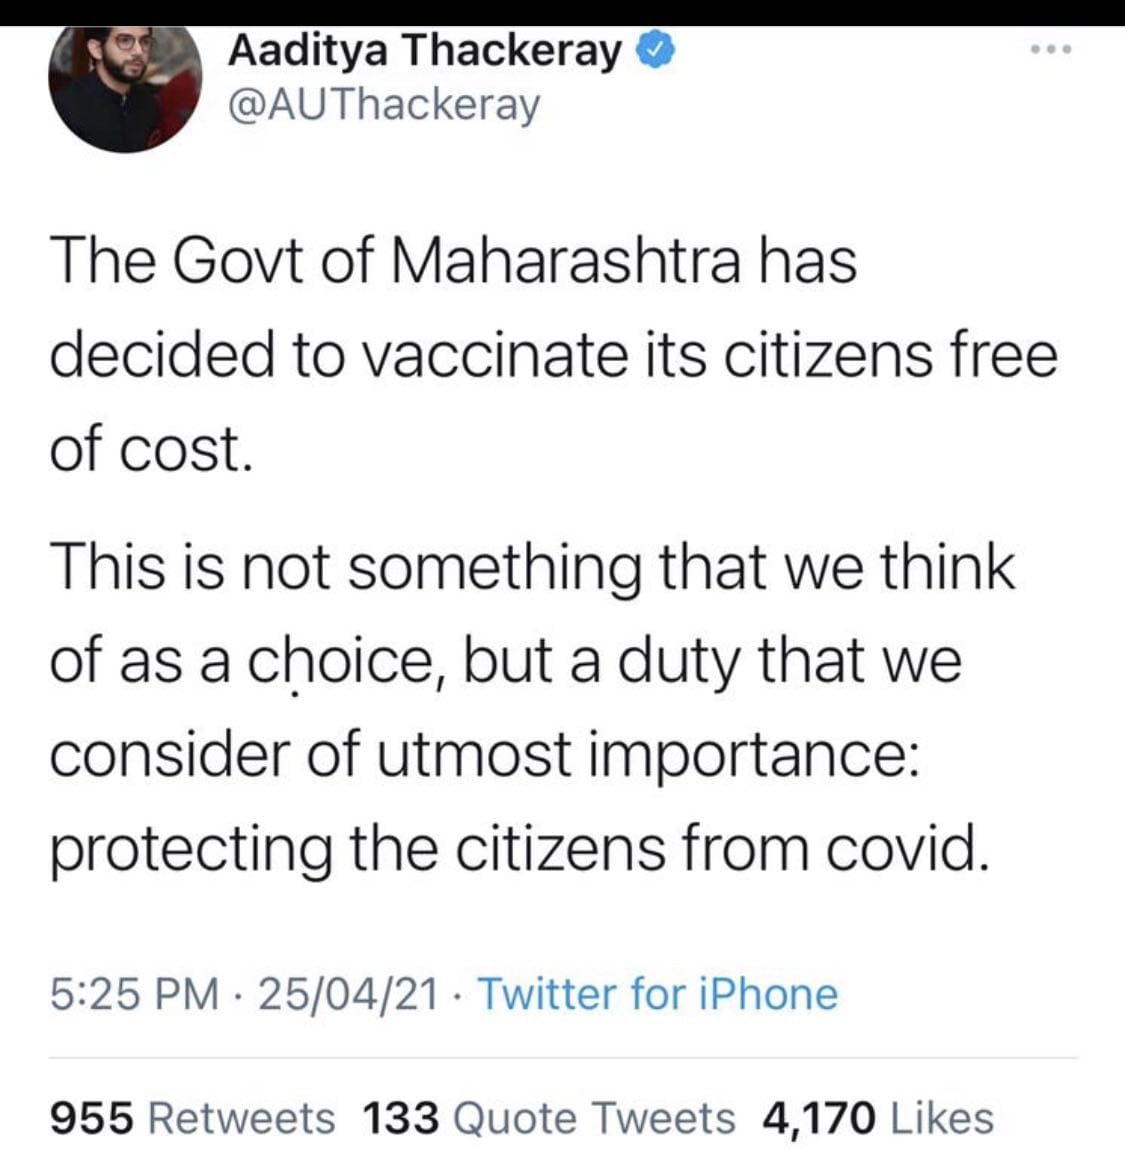 Aaditya Thackeray deleted his tweet